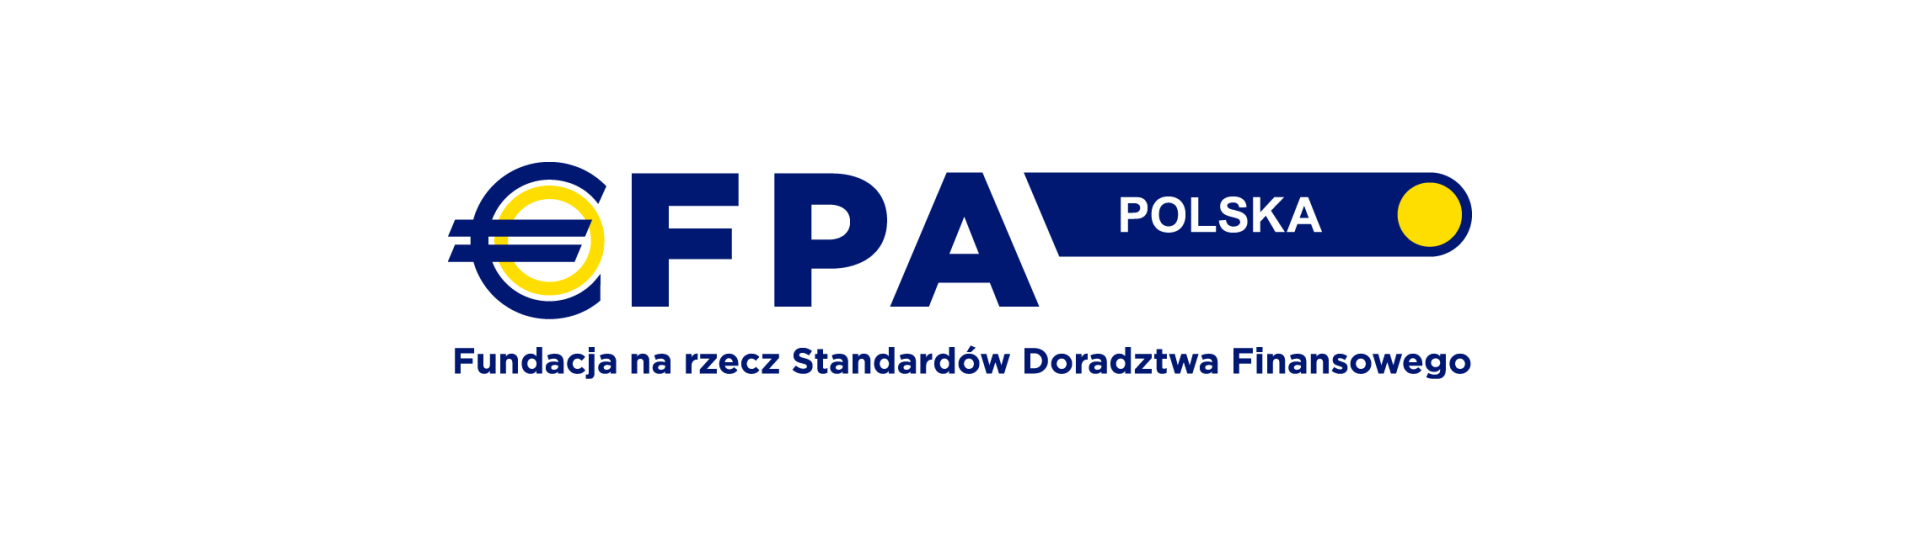 EFPA Polska - Fundacja na rzecz Standardów Doradztwa Finansowego